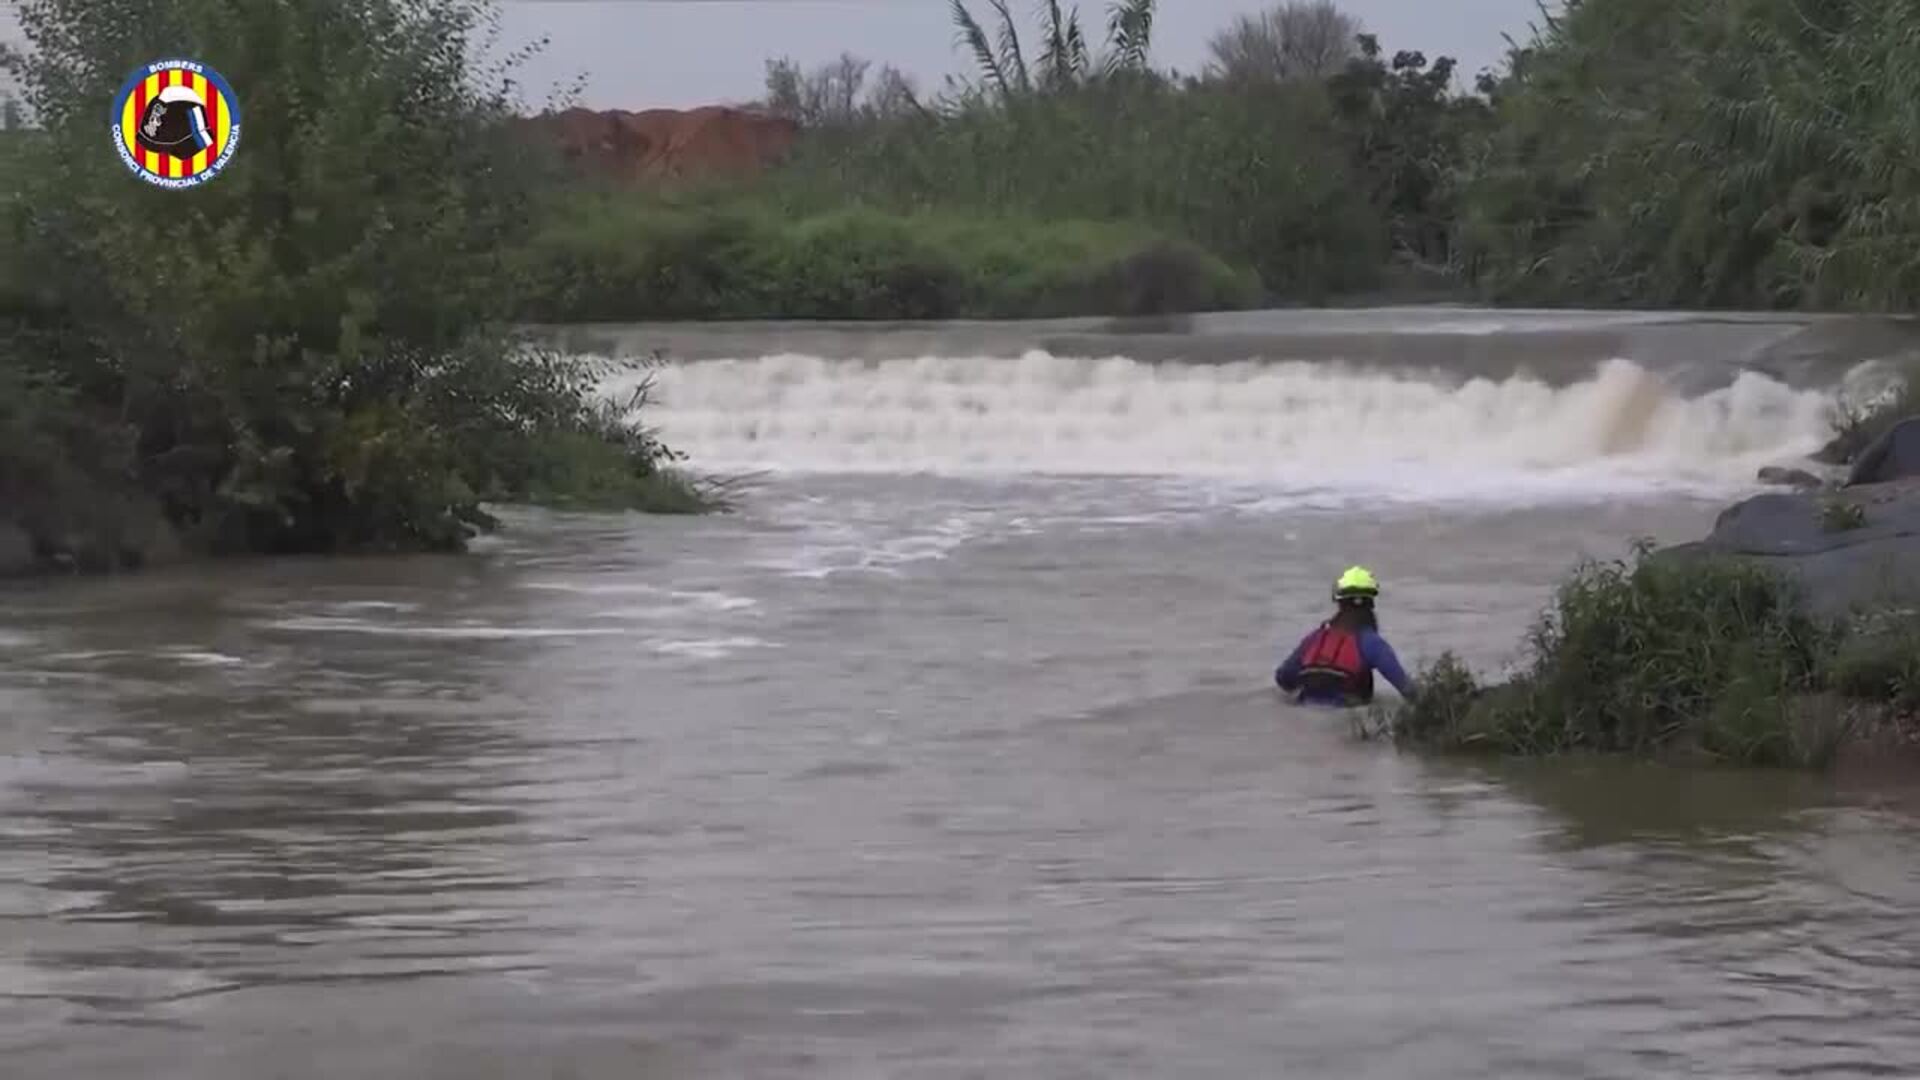 Buscan a una persona arrastrada por el agua cuando cruzaba en bicicleta por un barranco en Paterna